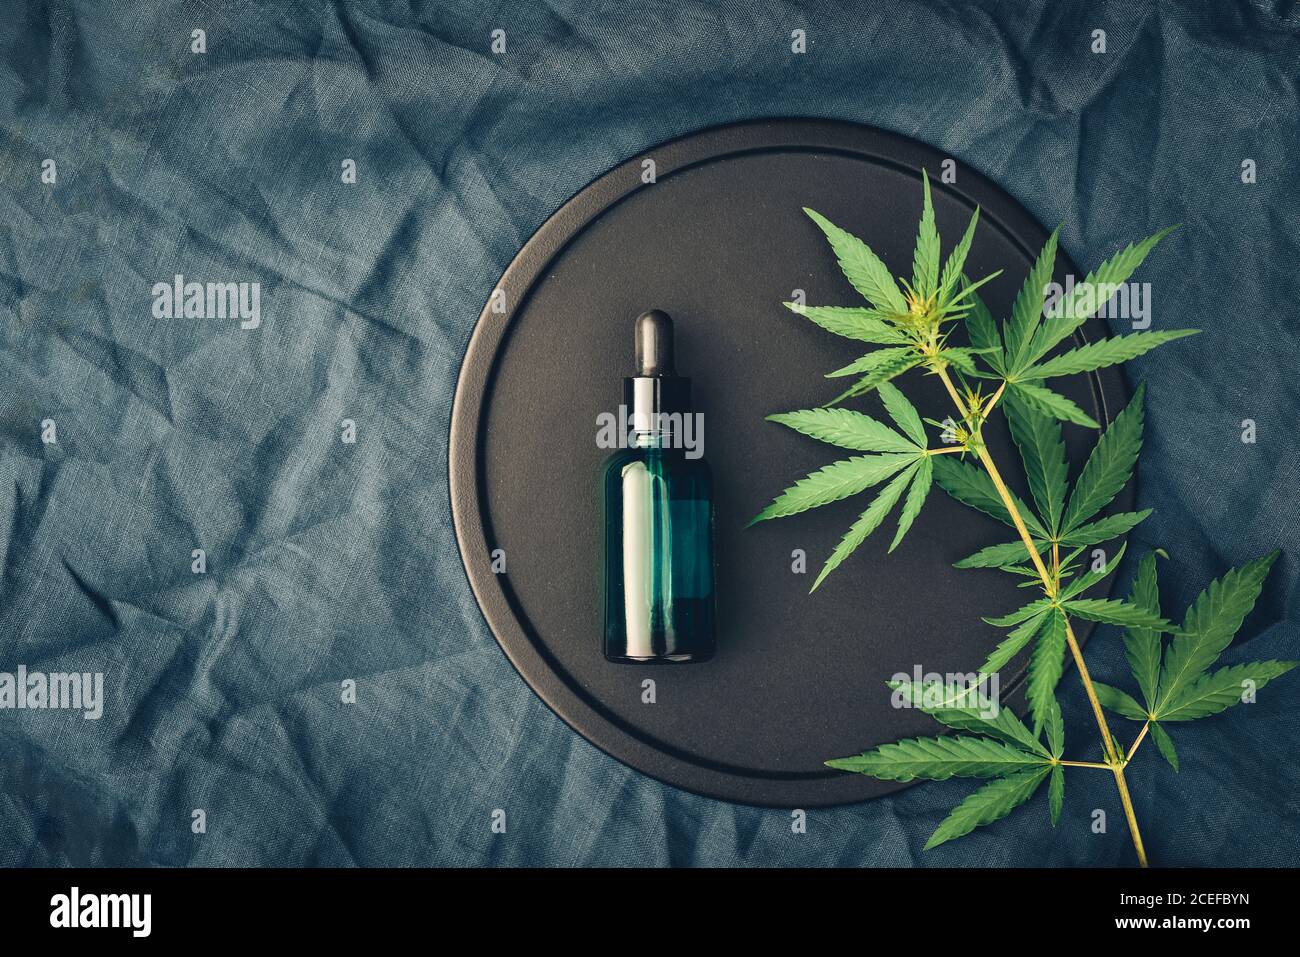 Cannabis produit médical, huile de CBD, avec des feuilles de chanvre sur un plat noir Banque D'Images